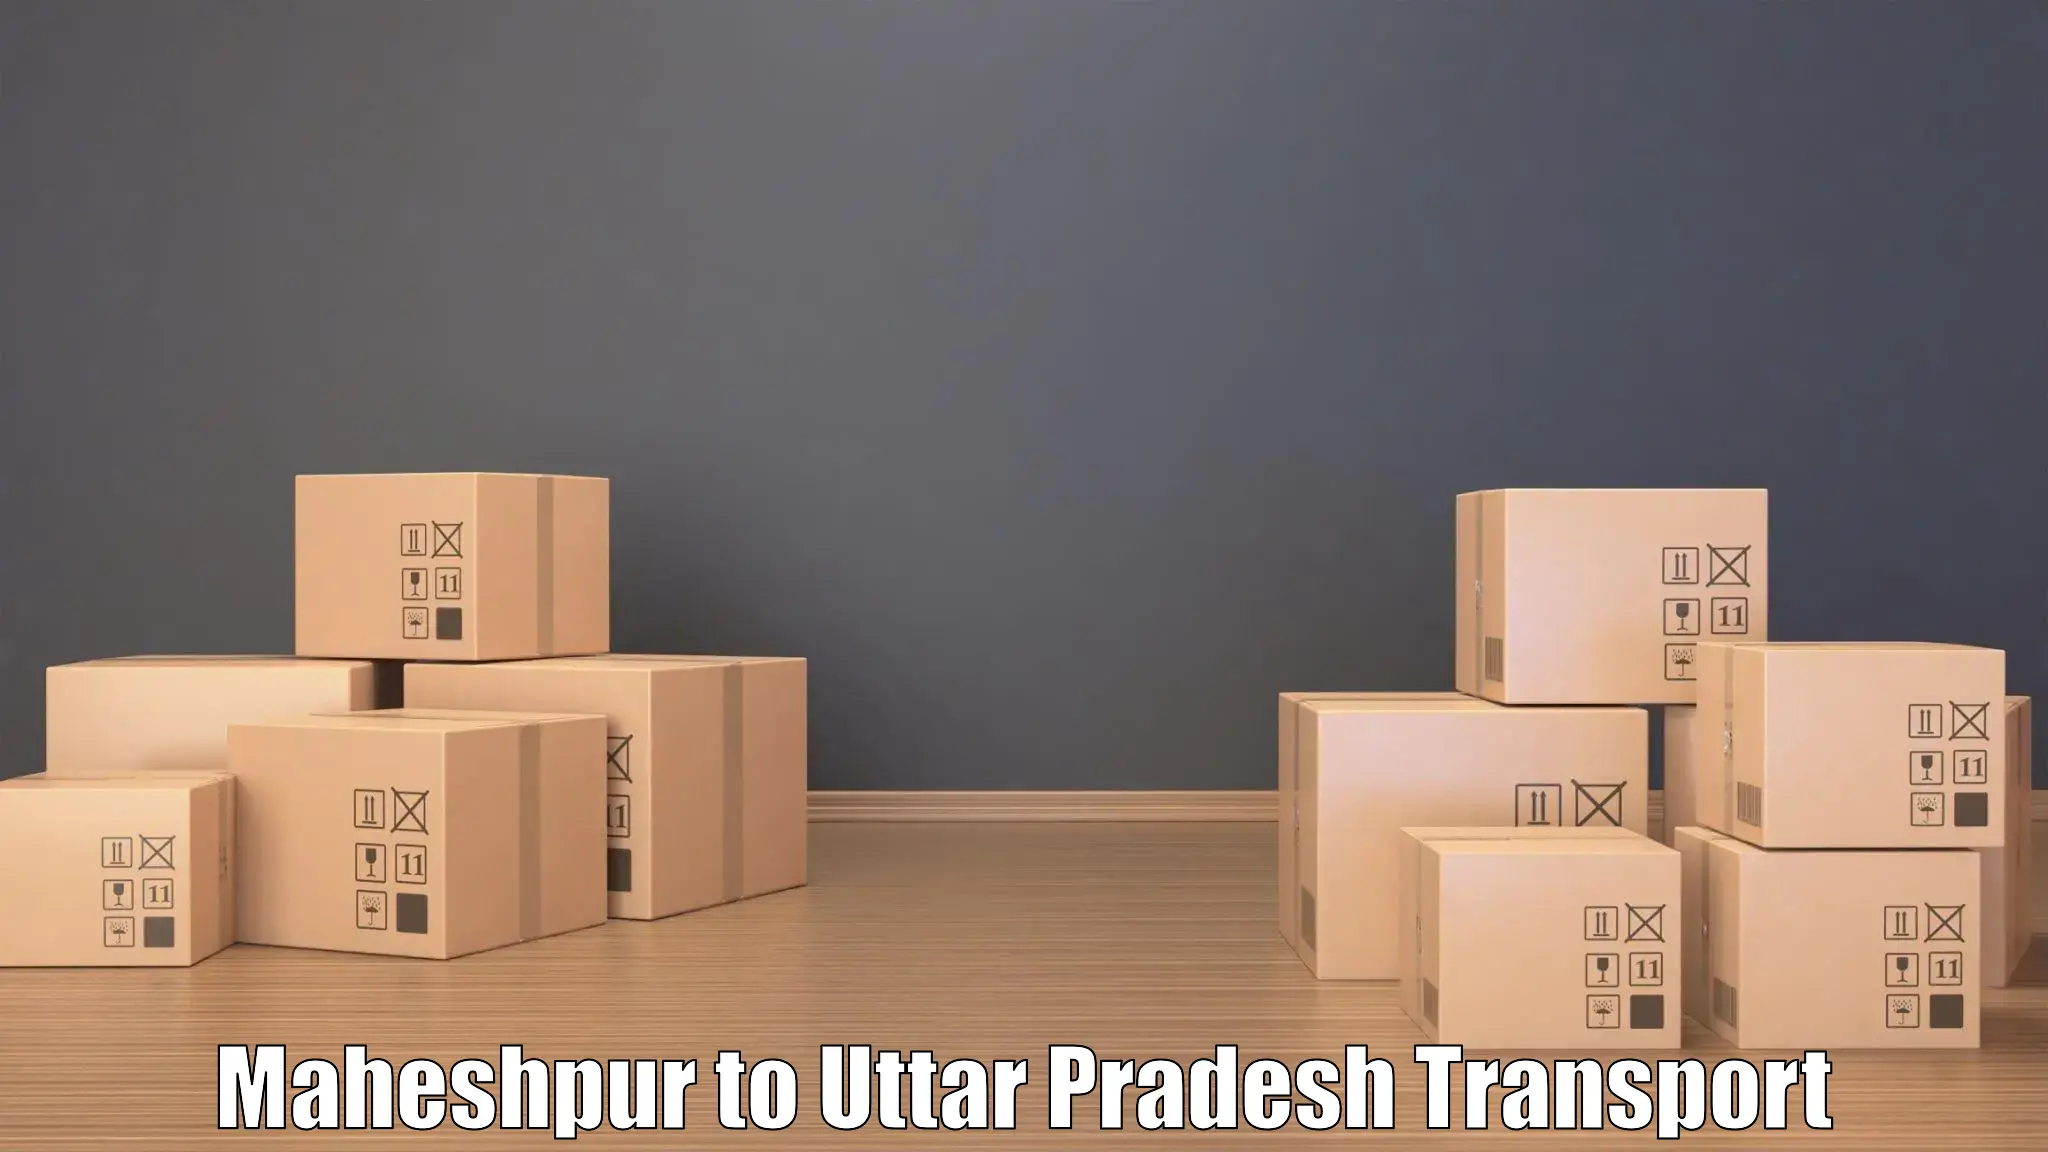 Bike transport service Maheshpur to Uttar Pradesh